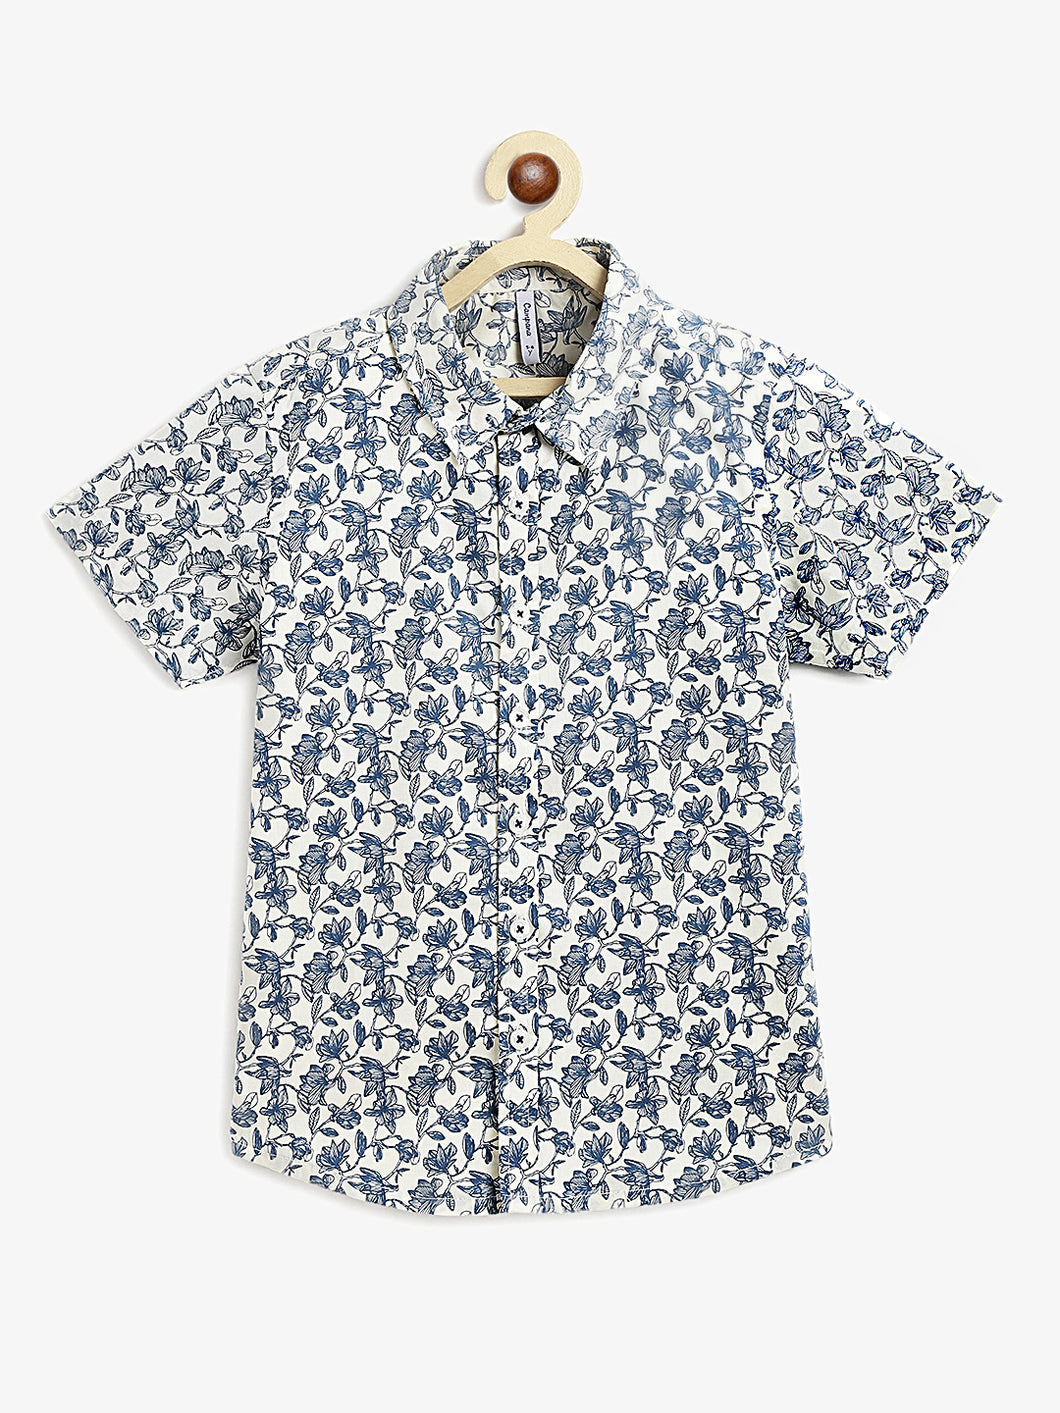 Campana Boys Yuki Short Sleeve Cotton Shirt - Tropical Print - White & Blue